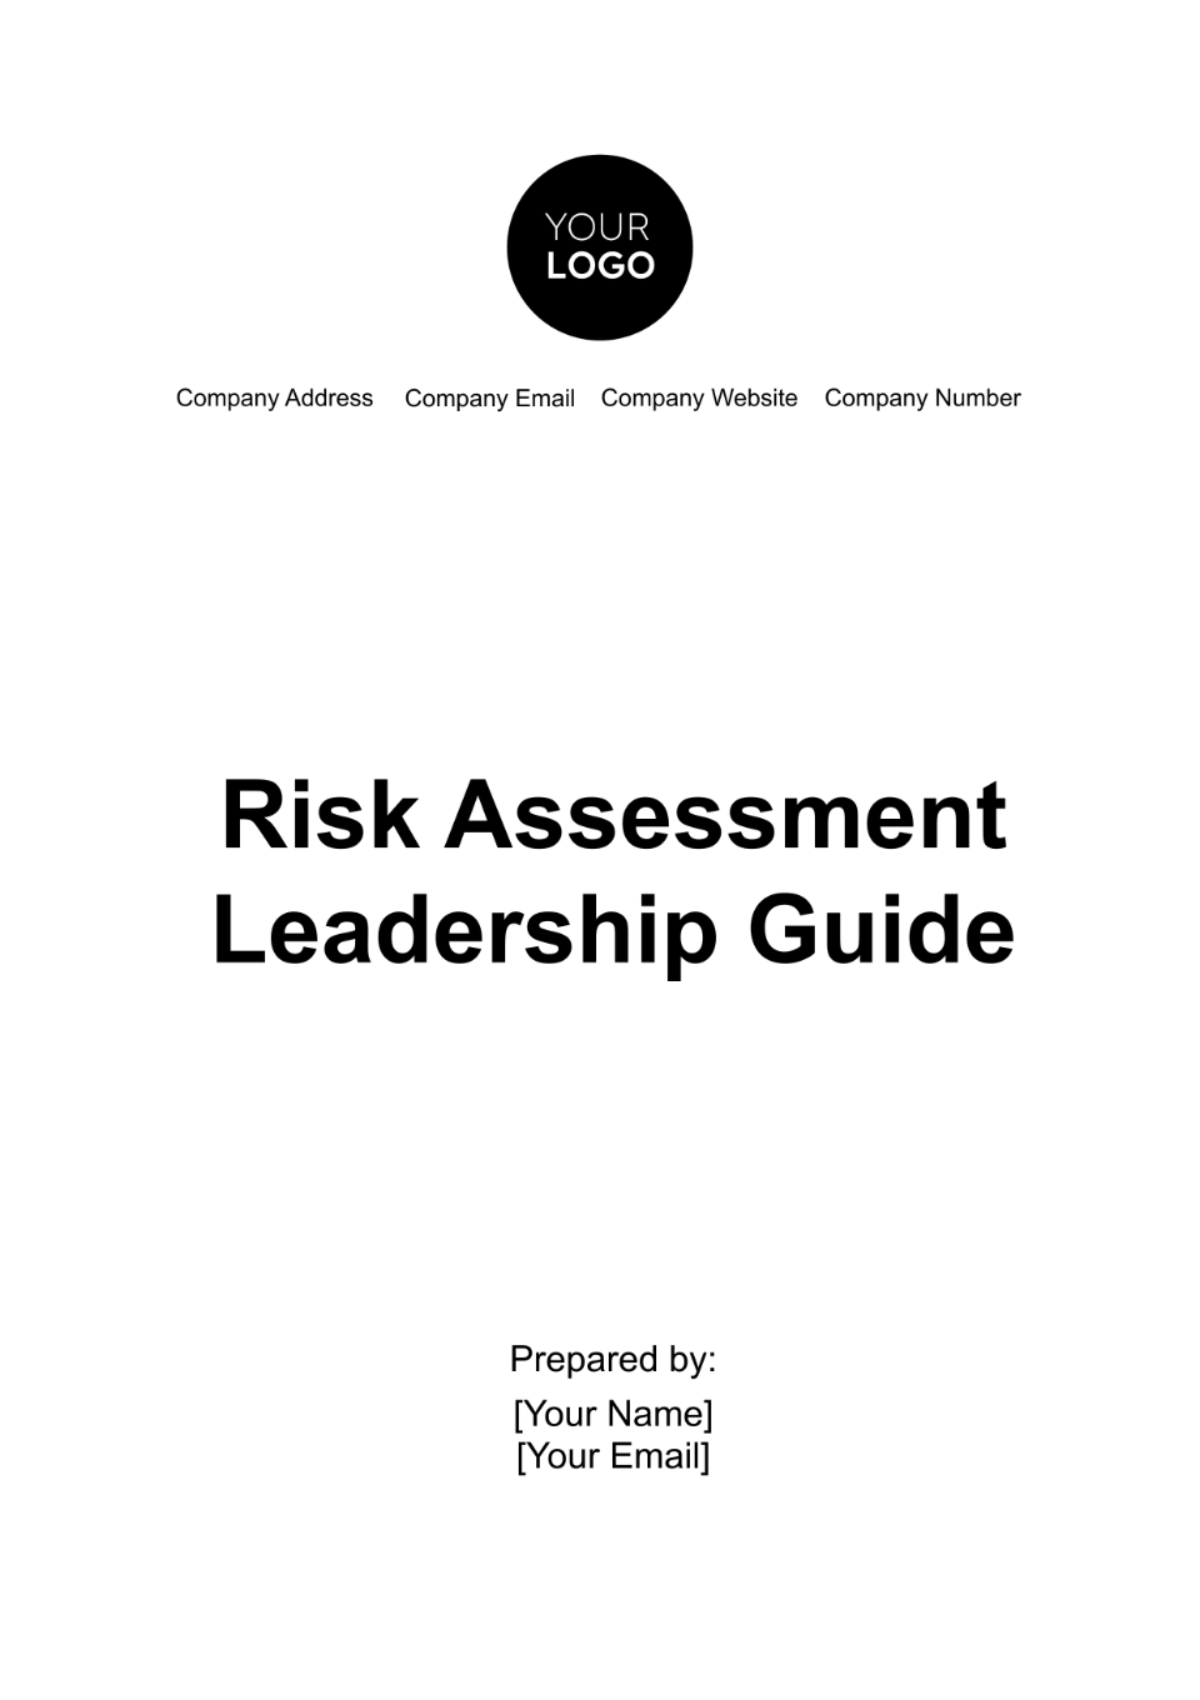 Risk Assessment Leadership Guide Template